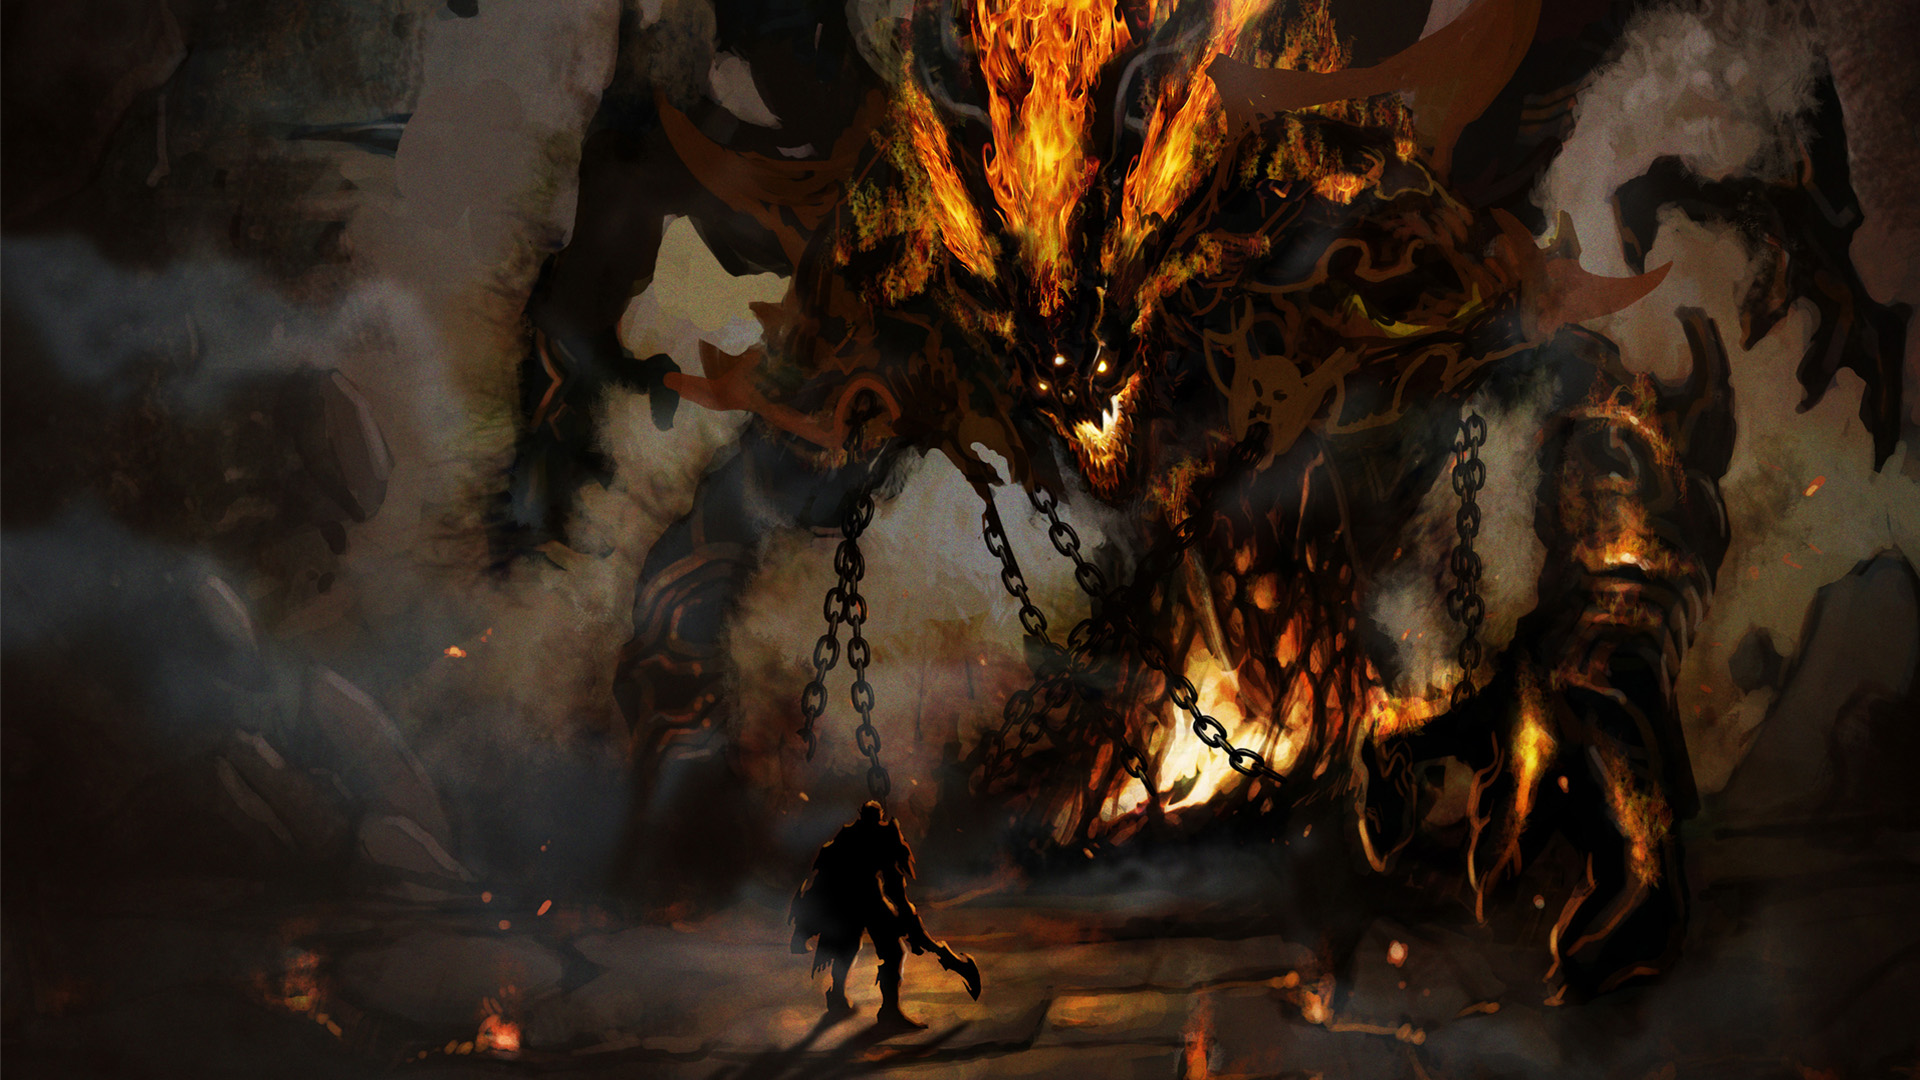 monsters, knights, fire, demons, Hell, boss, fantasy art, colossus, artwork, templar - desktop wallpaper